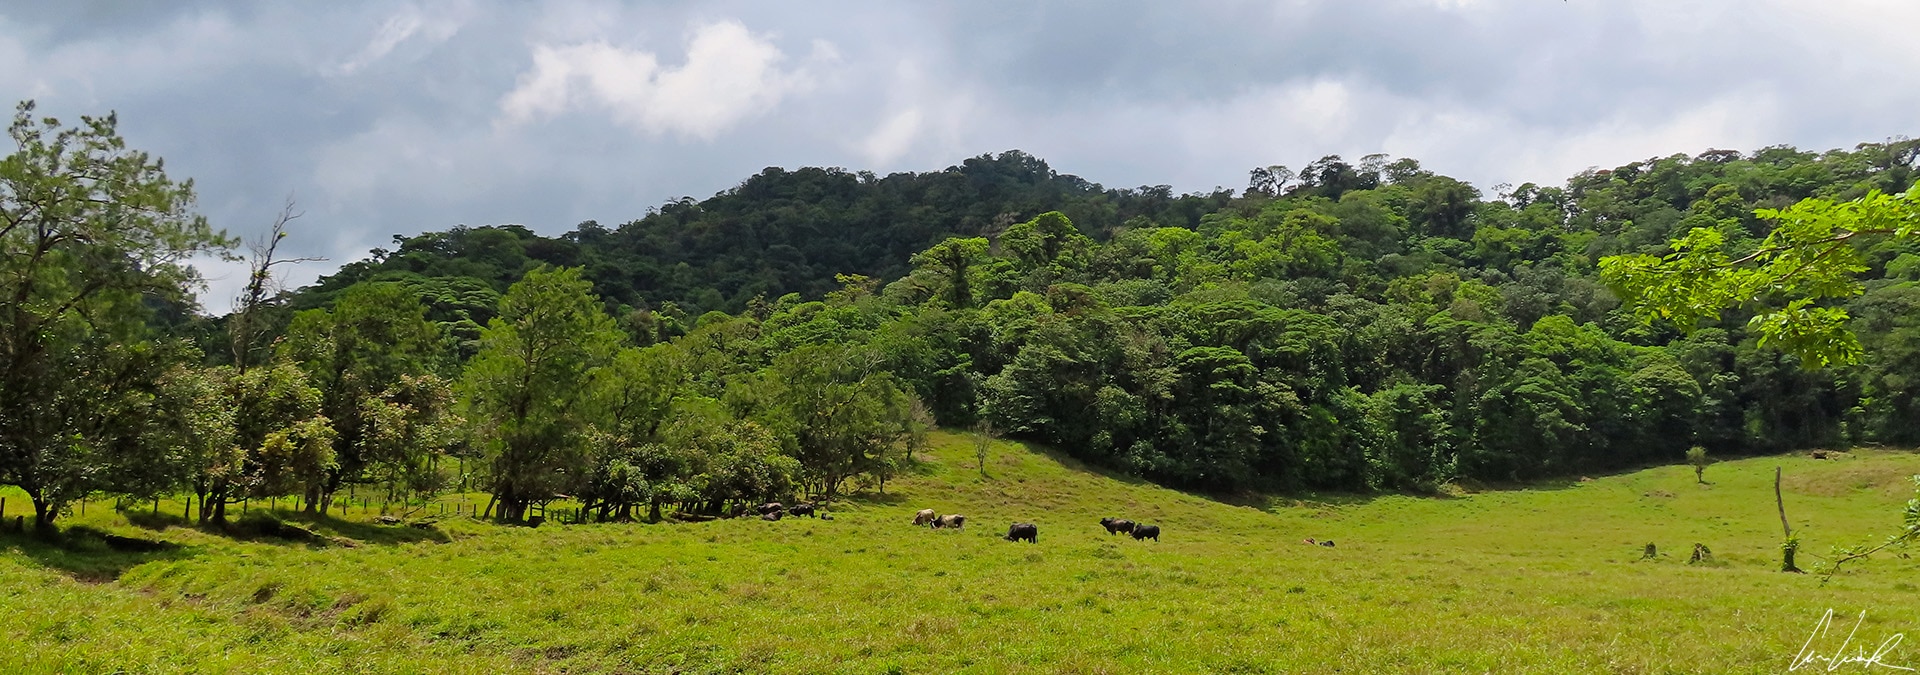 Sur les pentes volcaniques de l’Arenal, la terre est d'une fertilité sans égale. La végétation est luxuriante et le bétail broute dans les vastes pâturages.